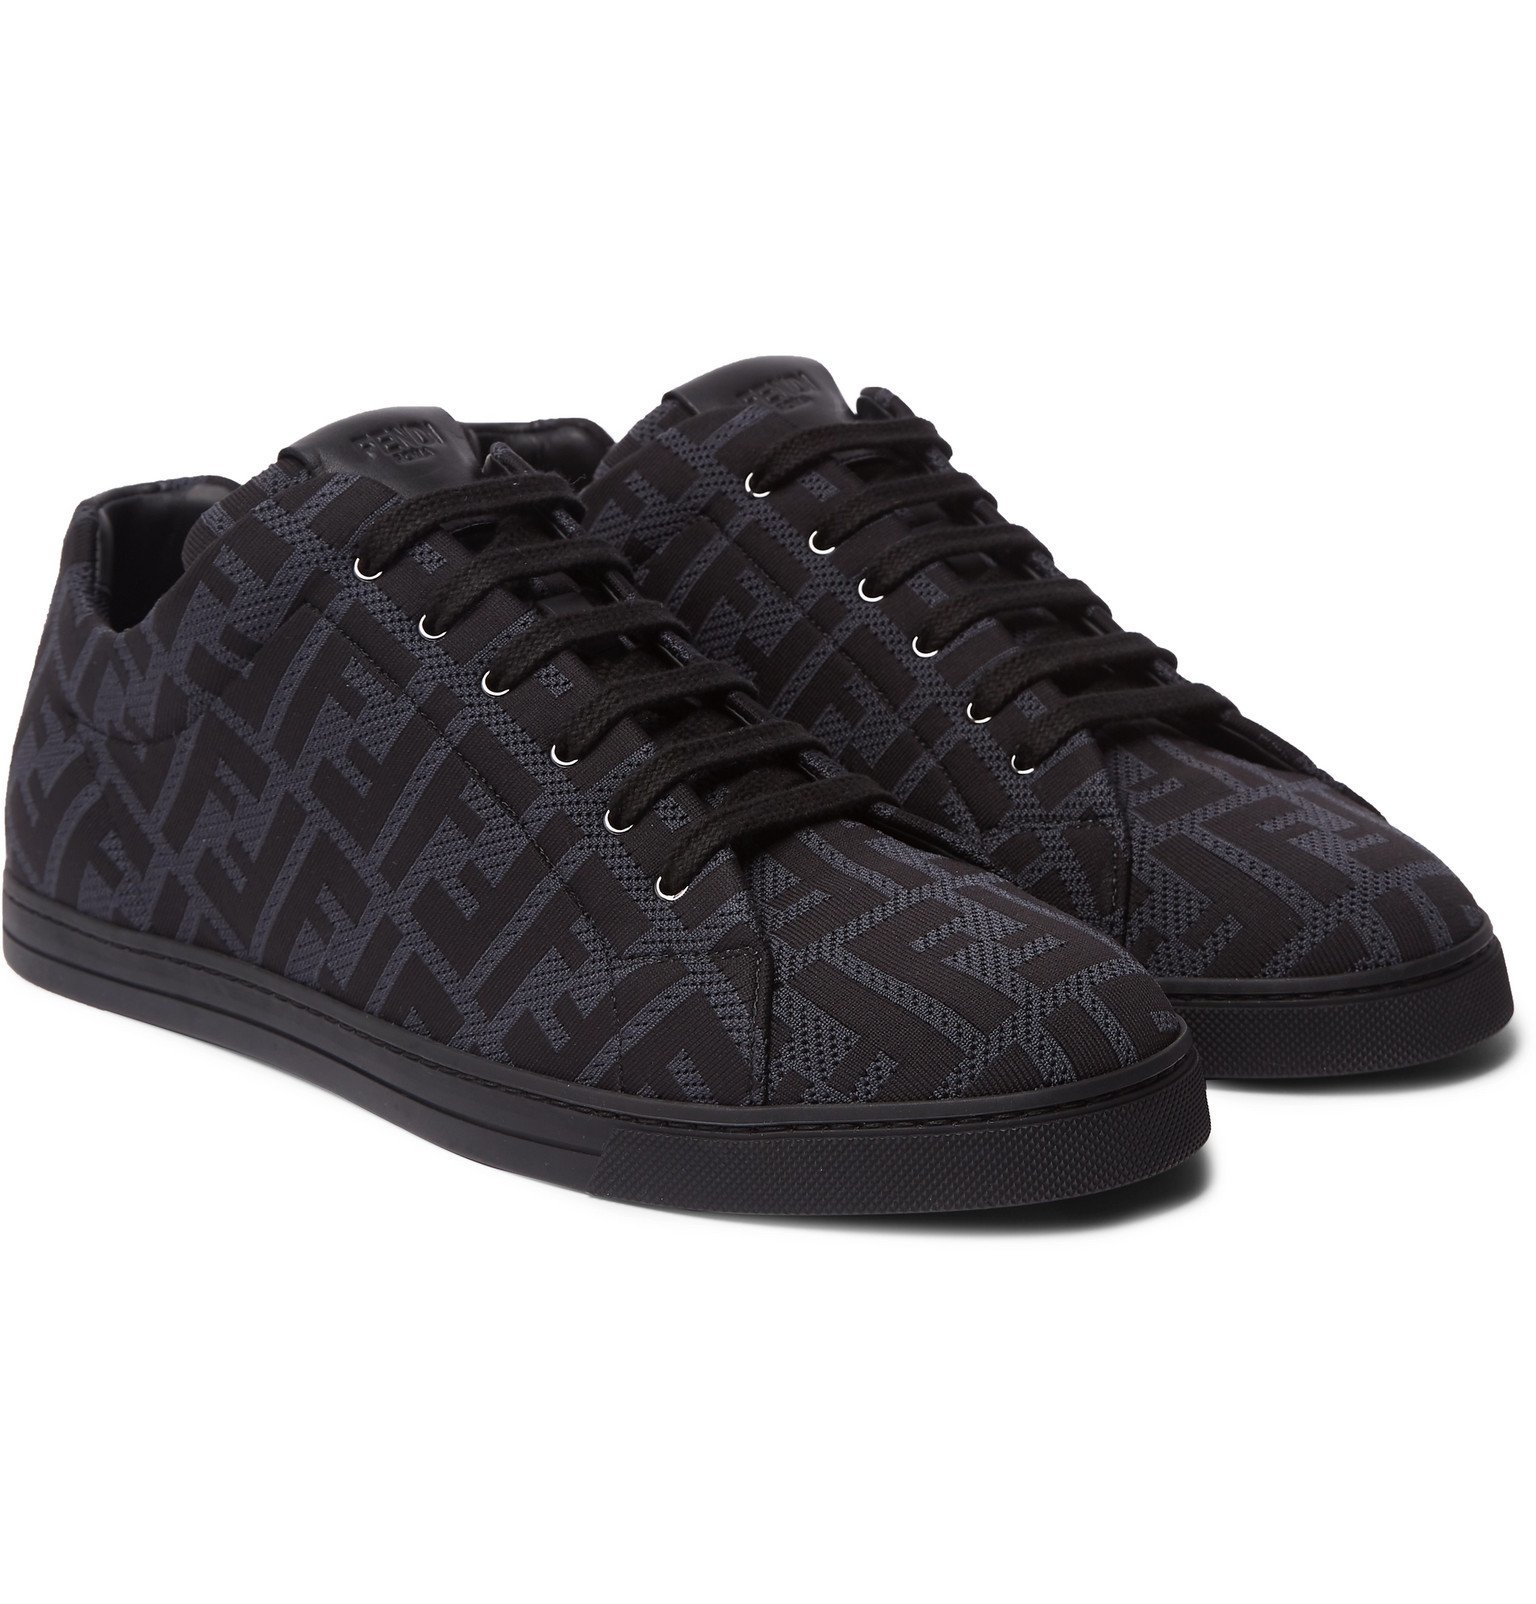 Fendi - Leather-Trimmed Logo-Jacquard Mesh Sneakers - Black Fendi